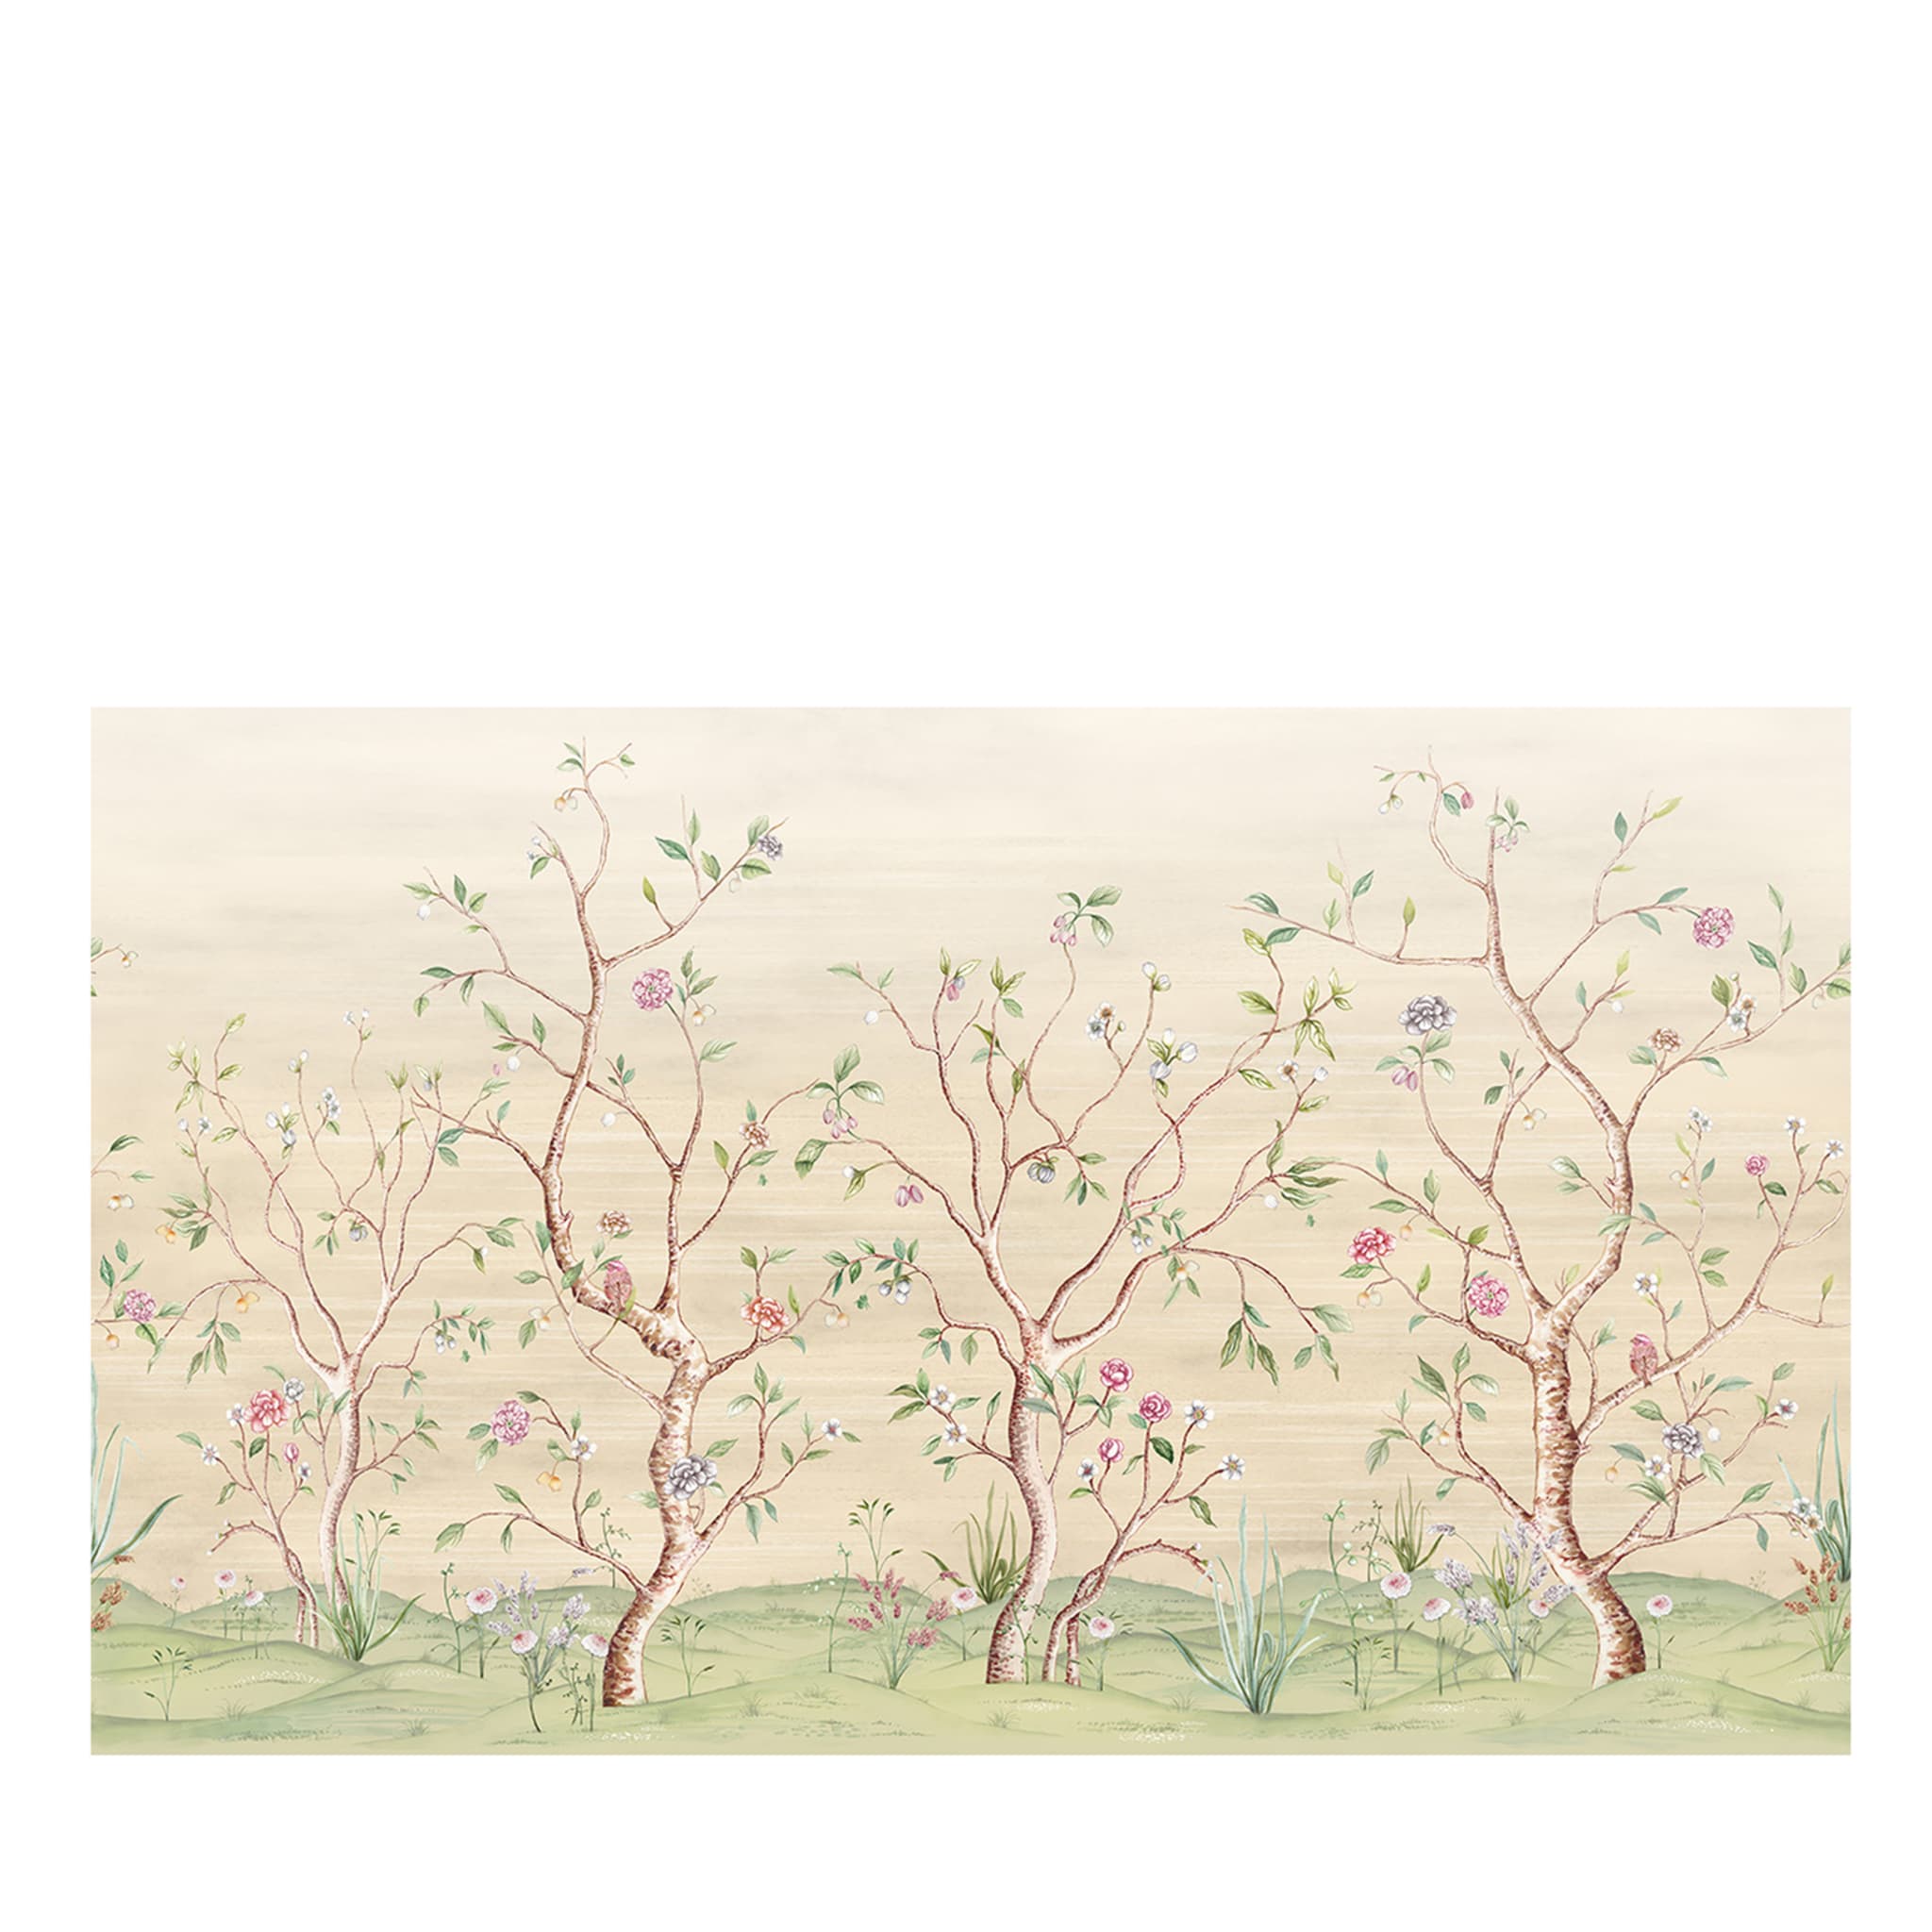 Chinoiserie 1 Wallpaper by Raffaella Gallazzi  - Main view